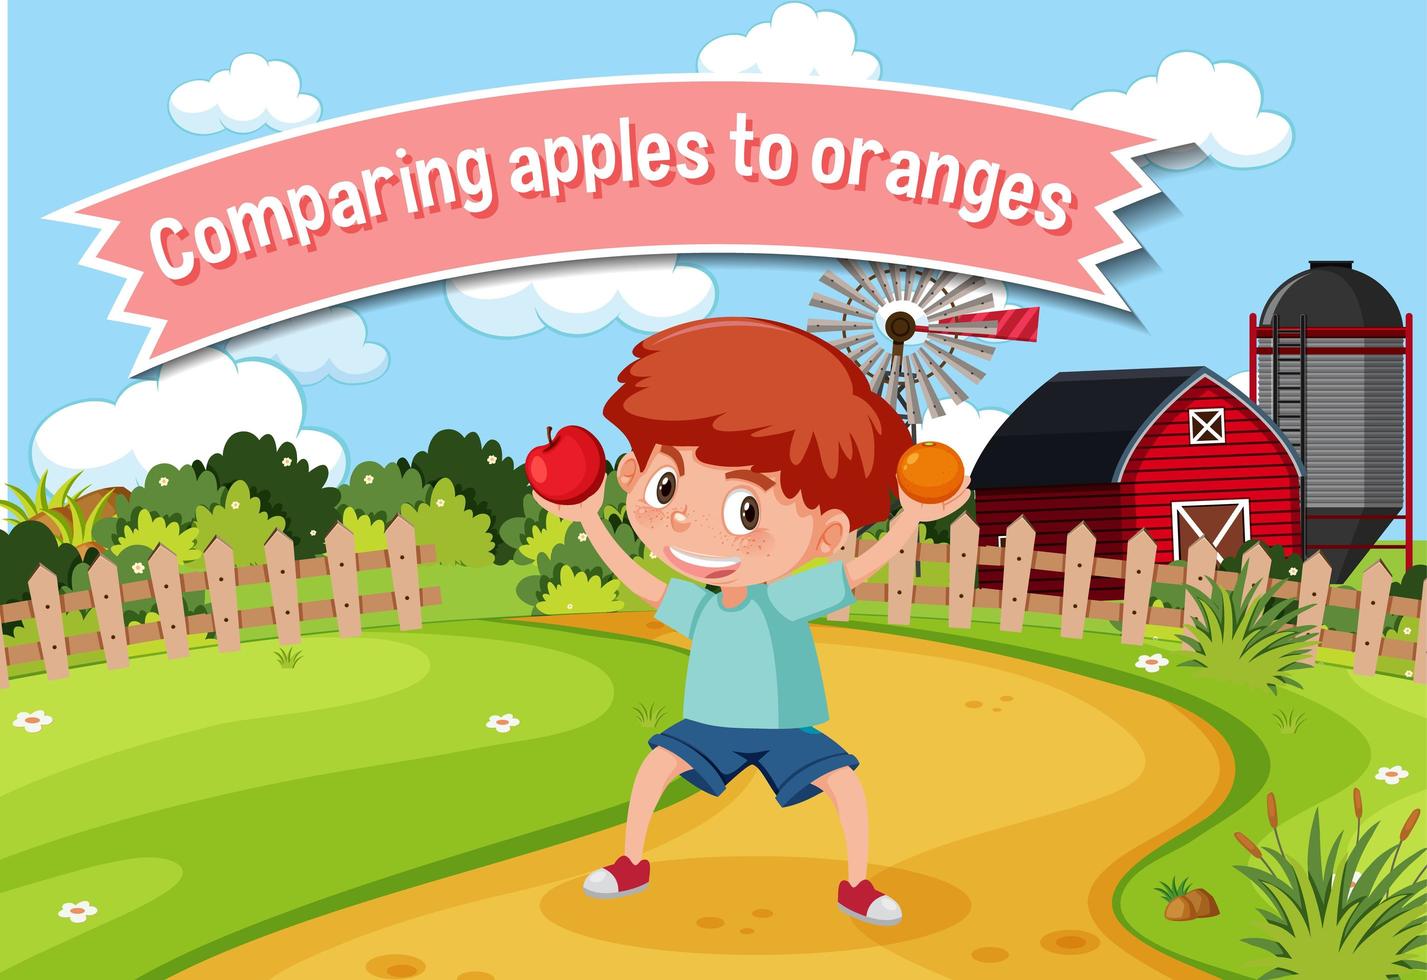 idiome anglais avec description d'image pour comparer des pommes et des oranges vecteur